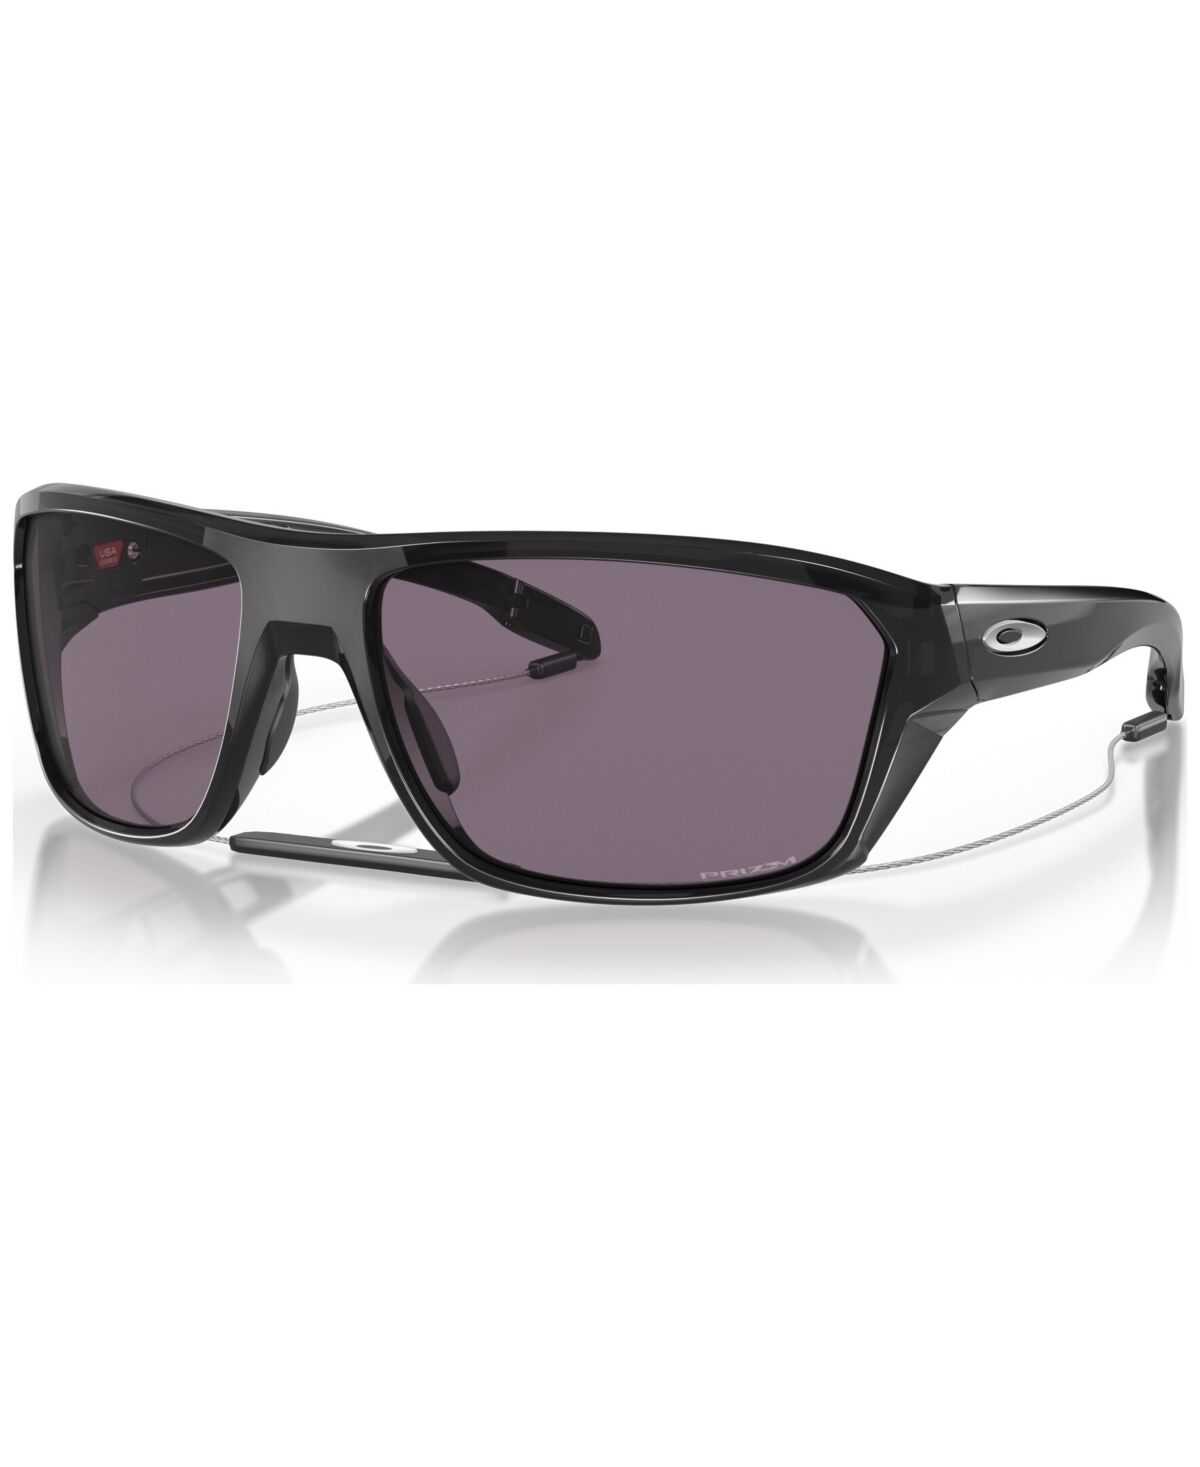 Oakley Men's Sunglasses, OO9416-3664 - Black Ink